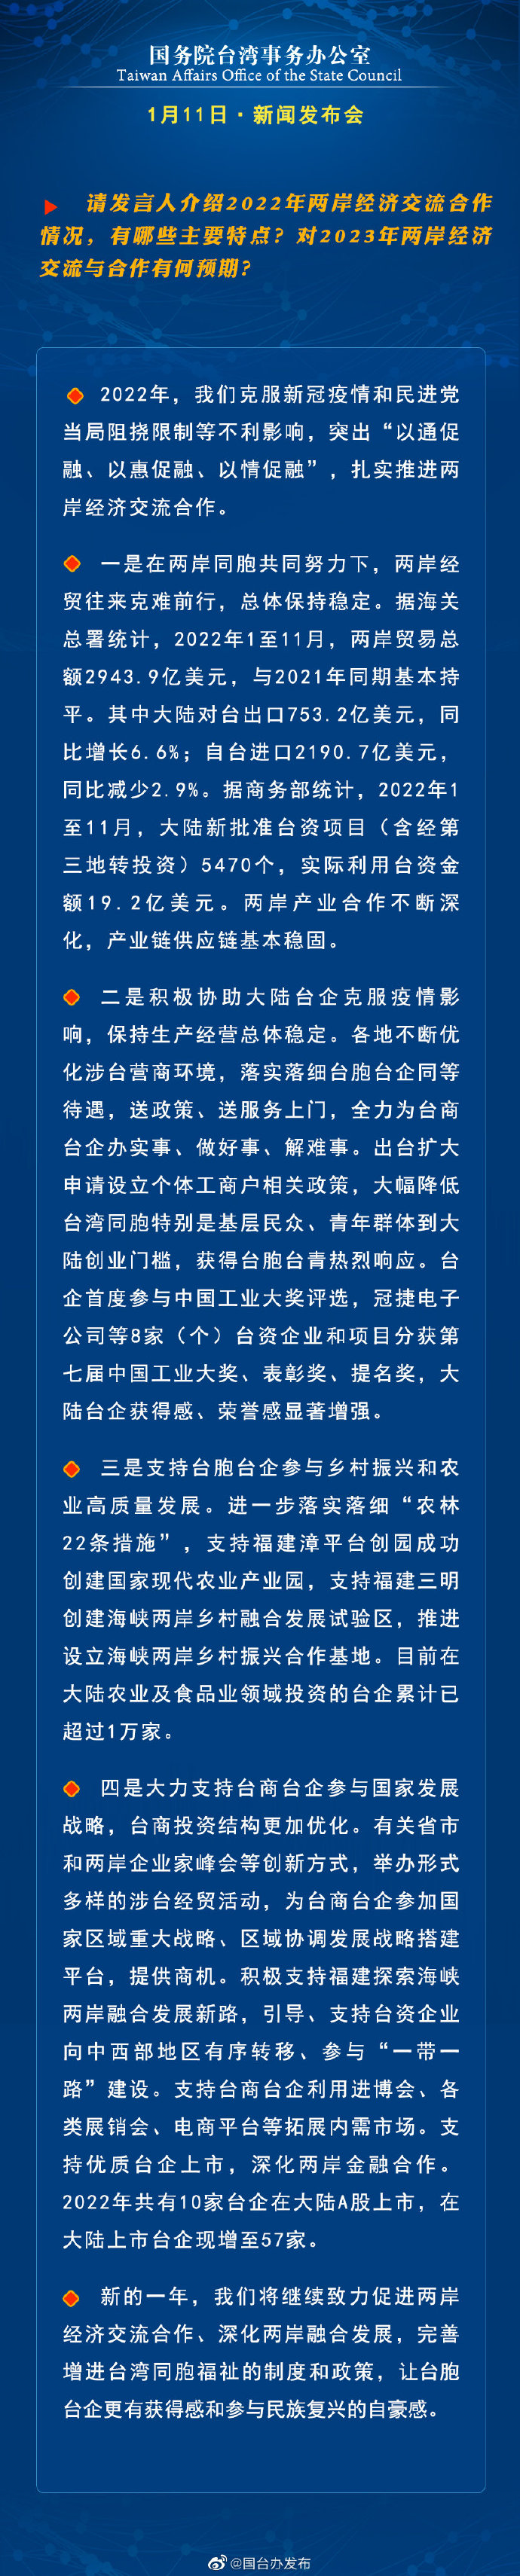 國務院台灣事務辦公室1月11日·新聞發佈會